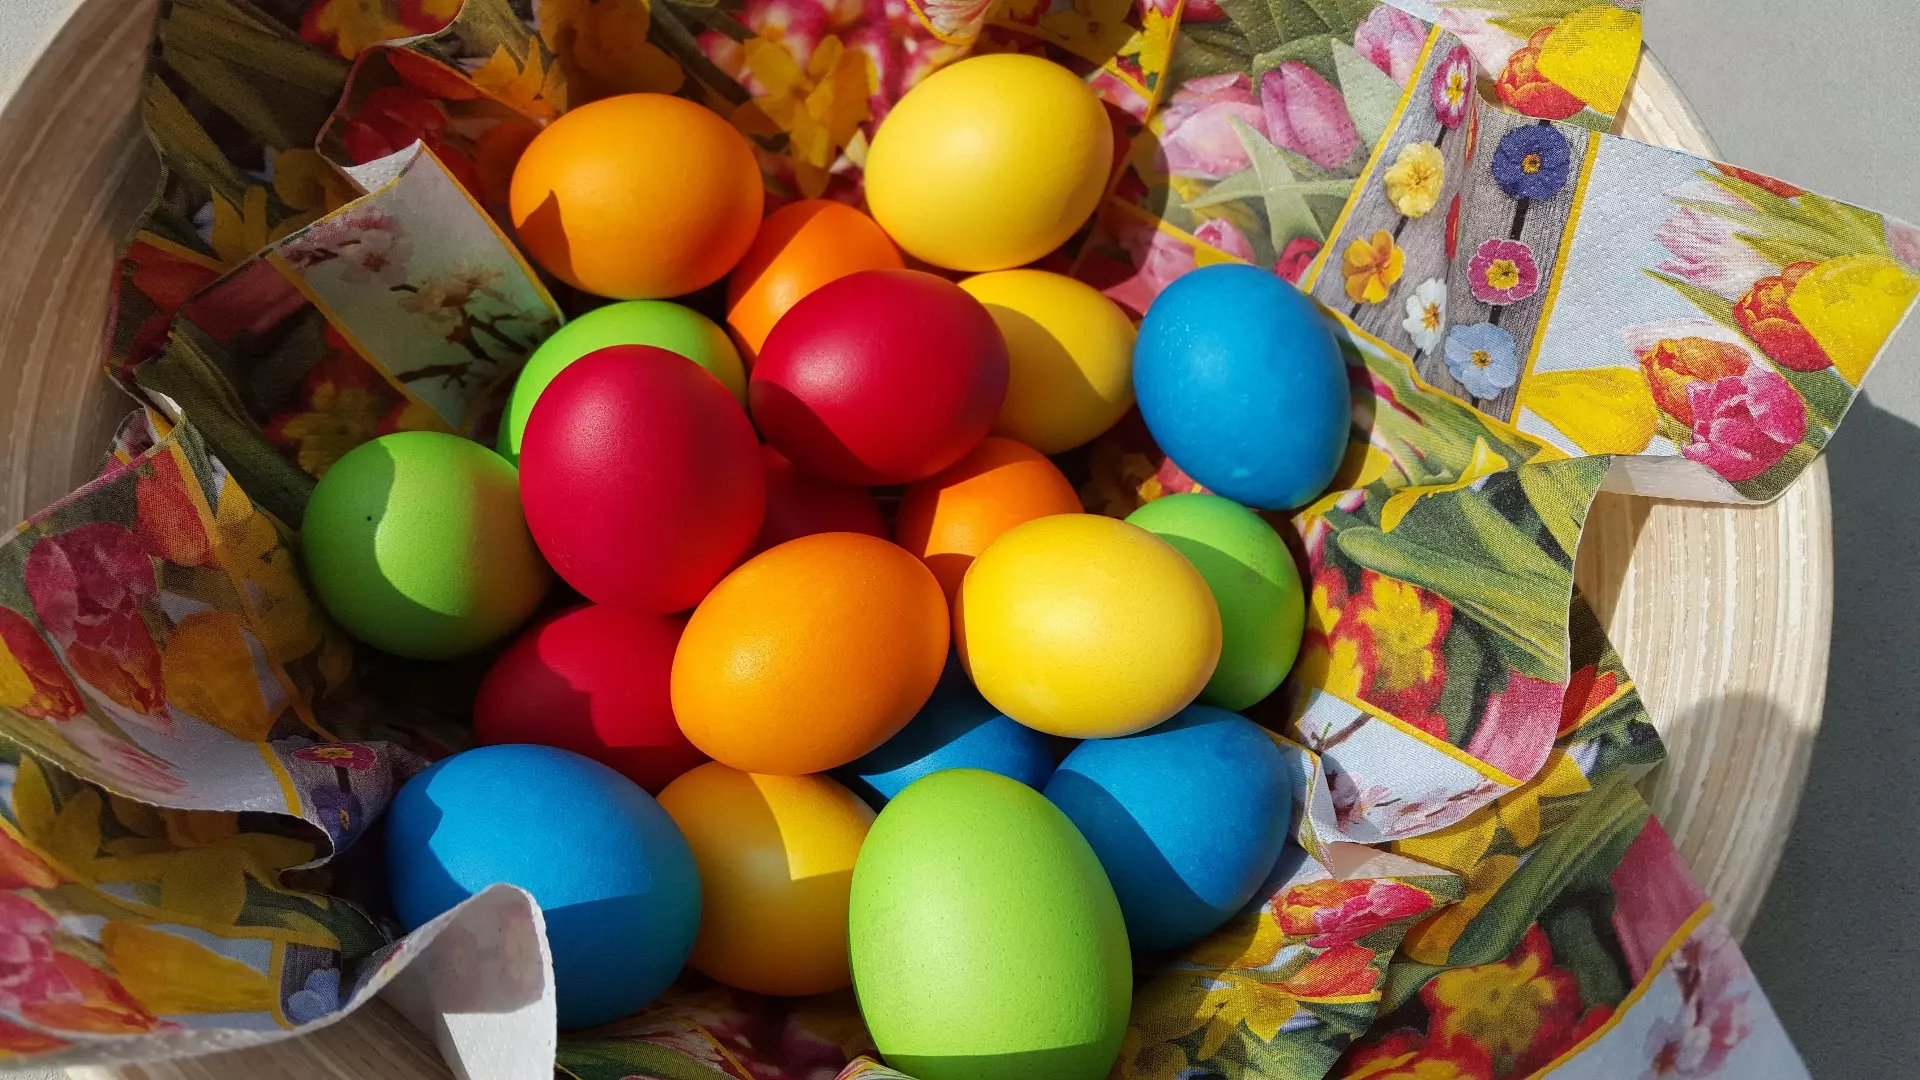 Яйца в честь праздника Пасхи красят преимущественно в красный цвет